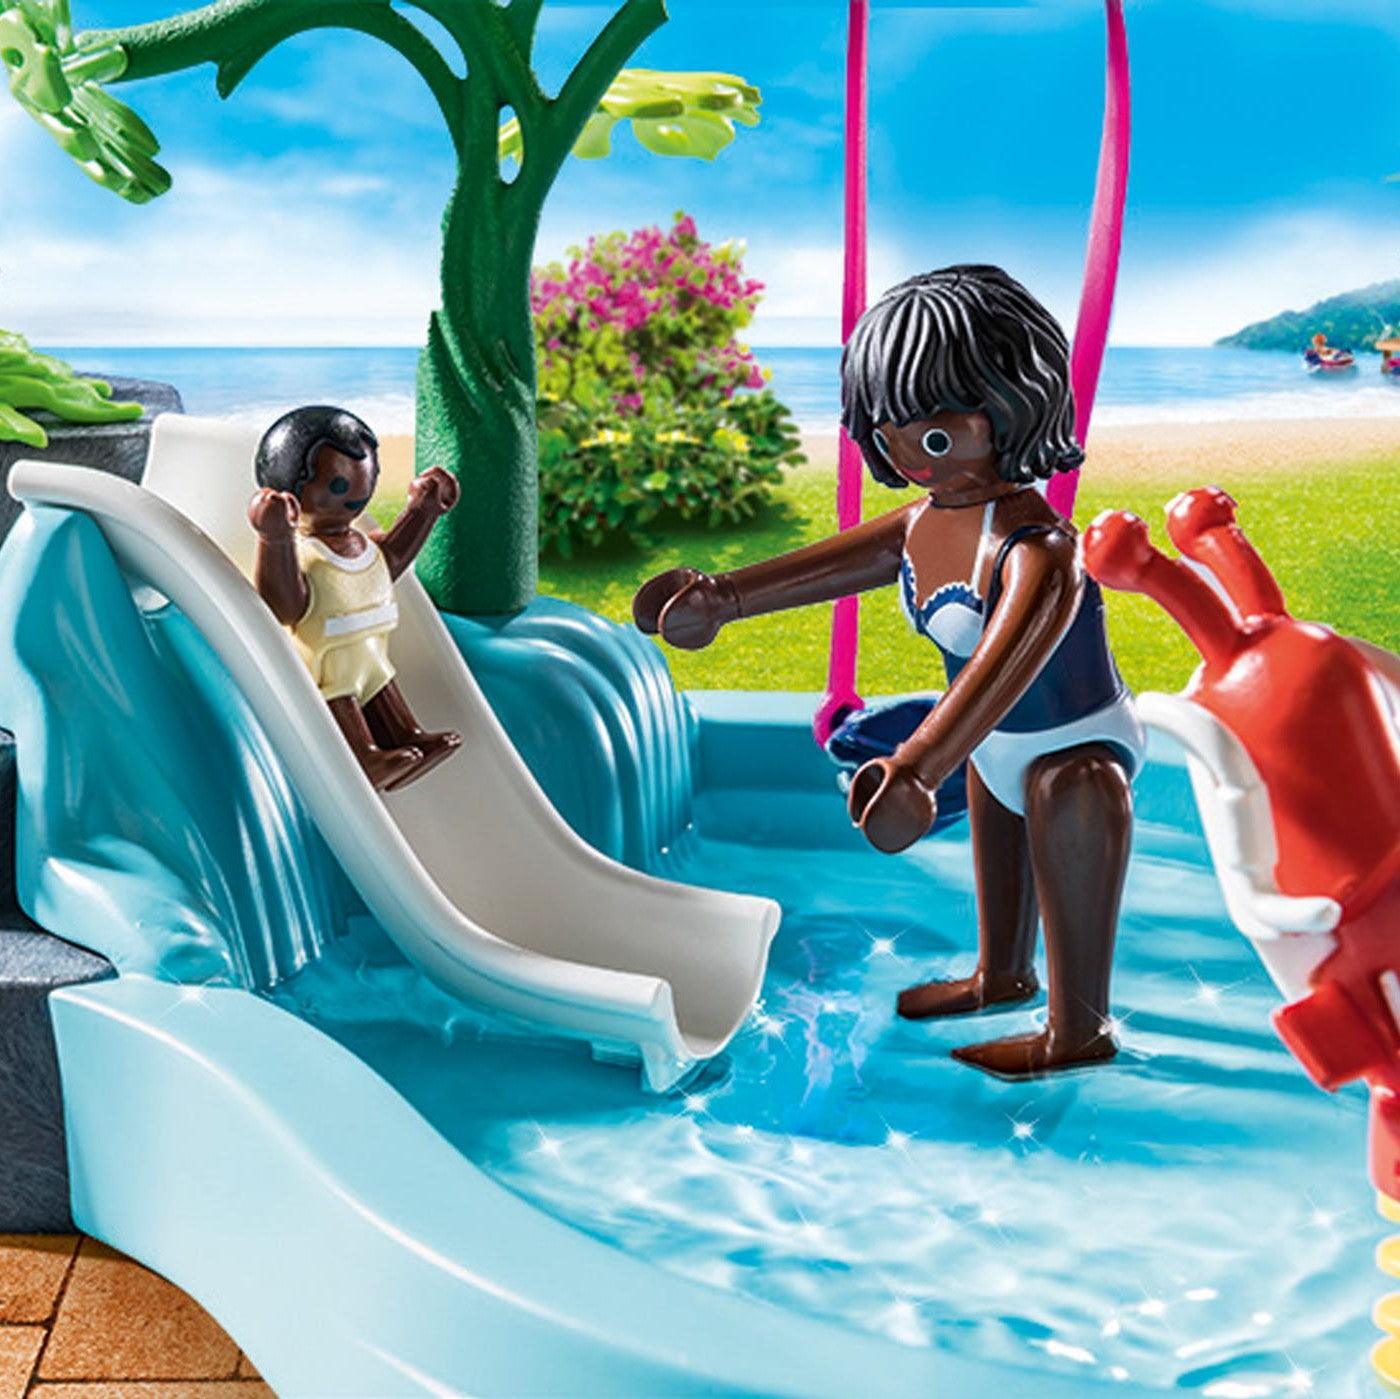 Playmobil: basen dziecięcy z wirem wodnym Family Fun - Noski Noski